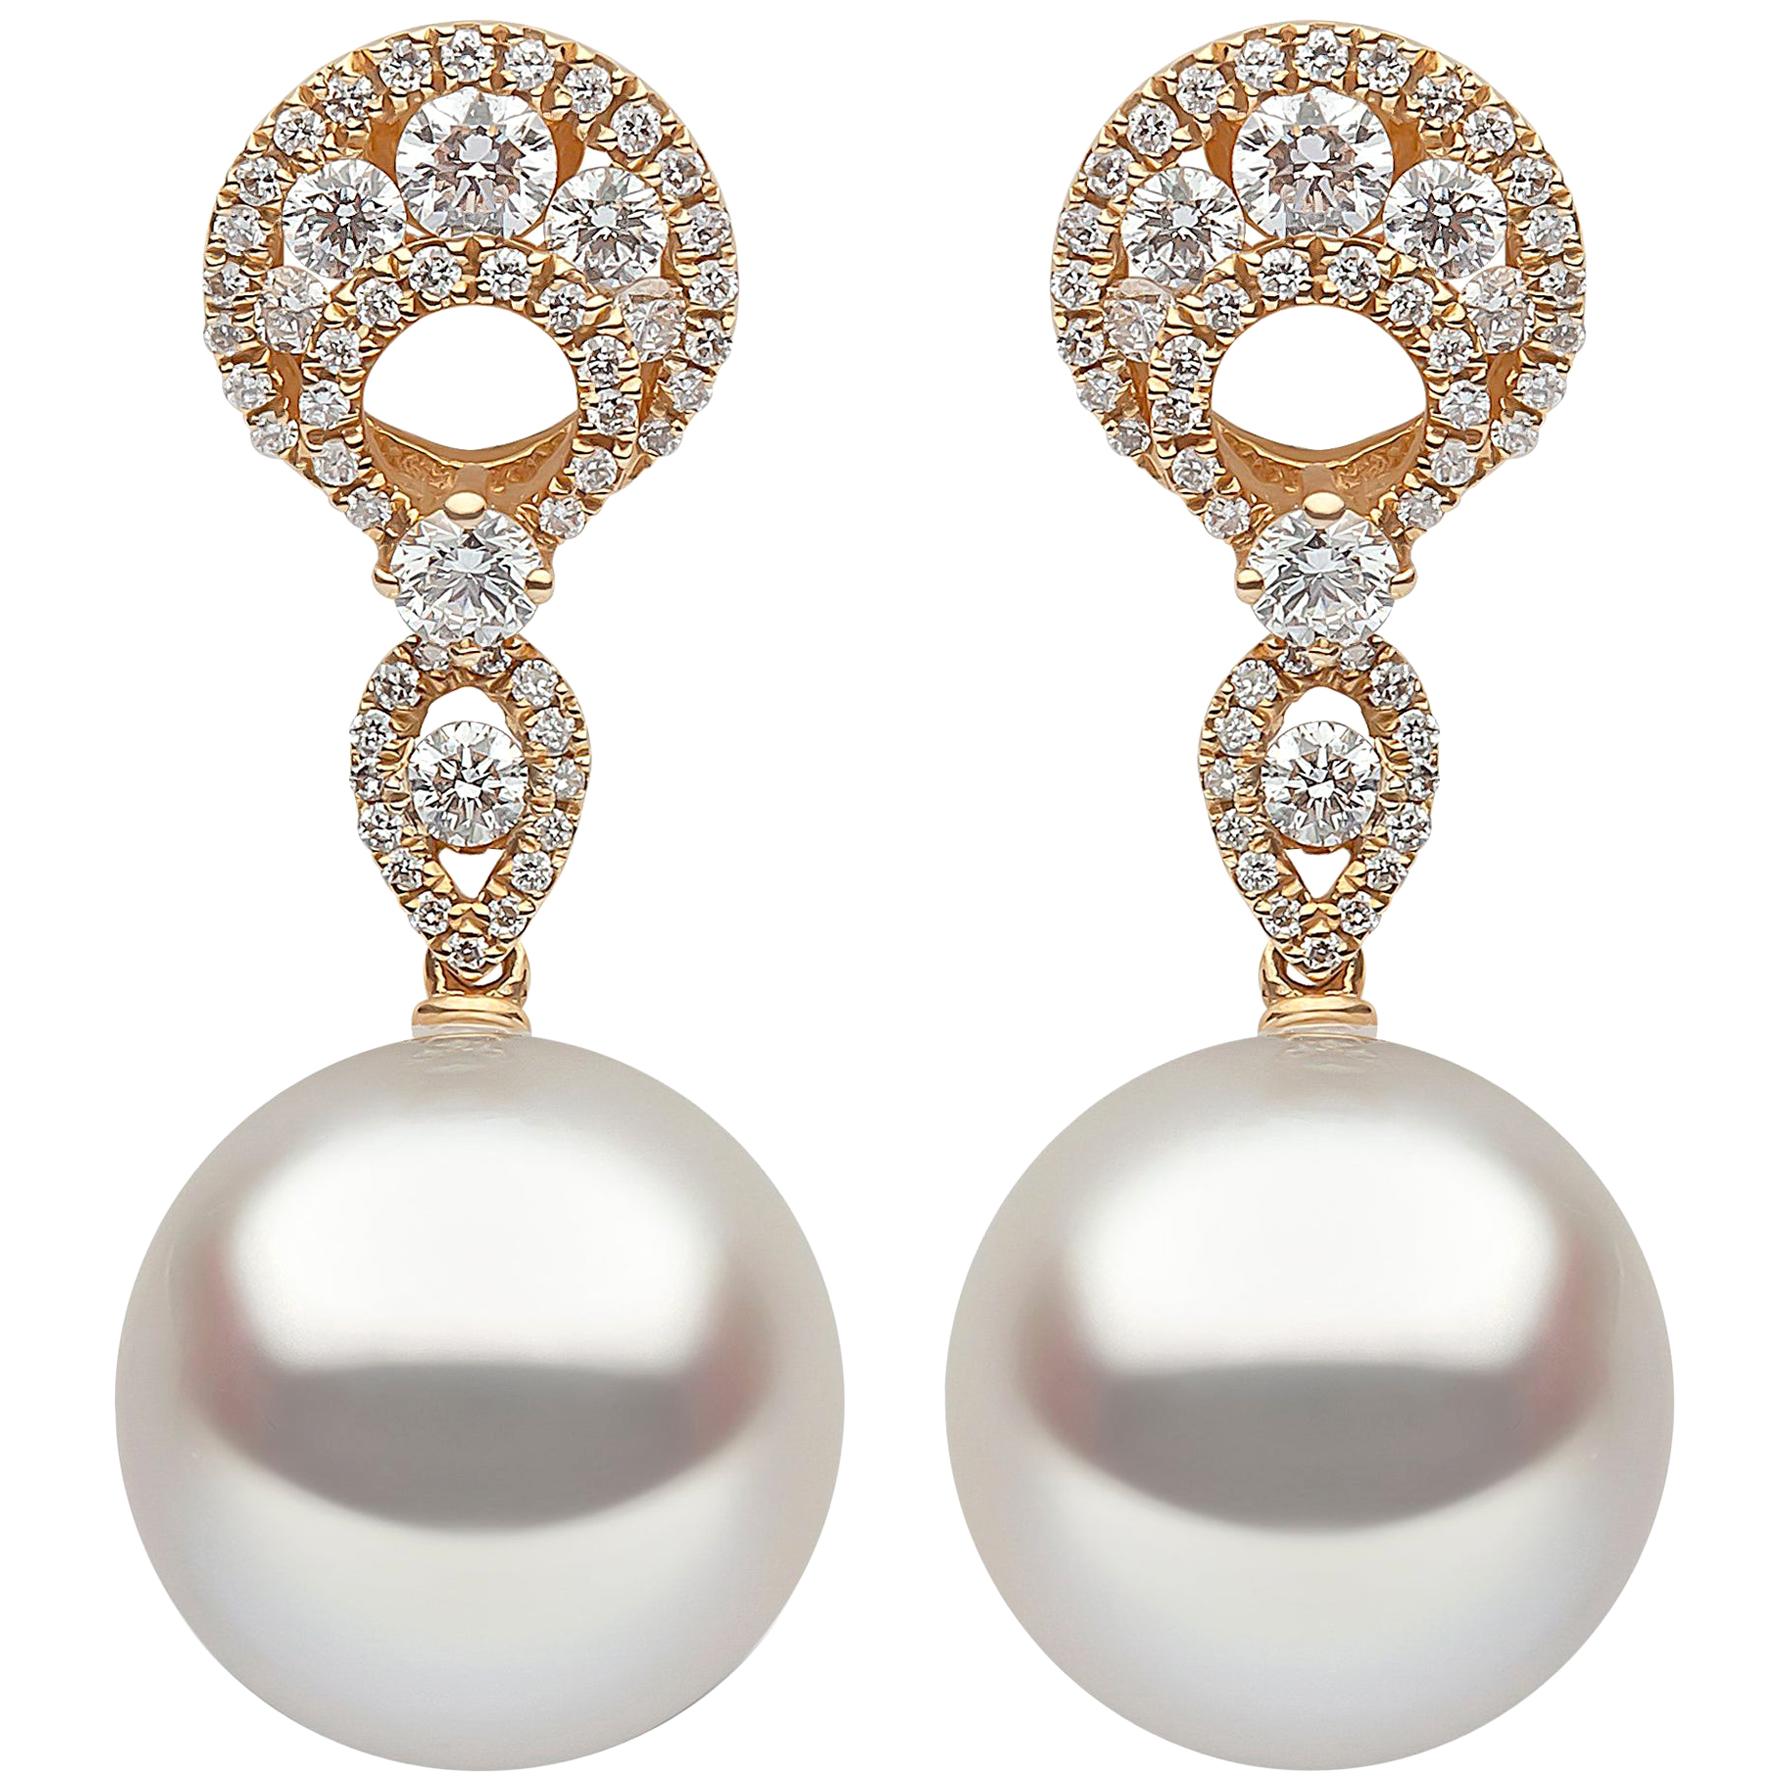 Yoko London South Sea Pearl and Diamond in 18 Karat Yellow Gold Earrings